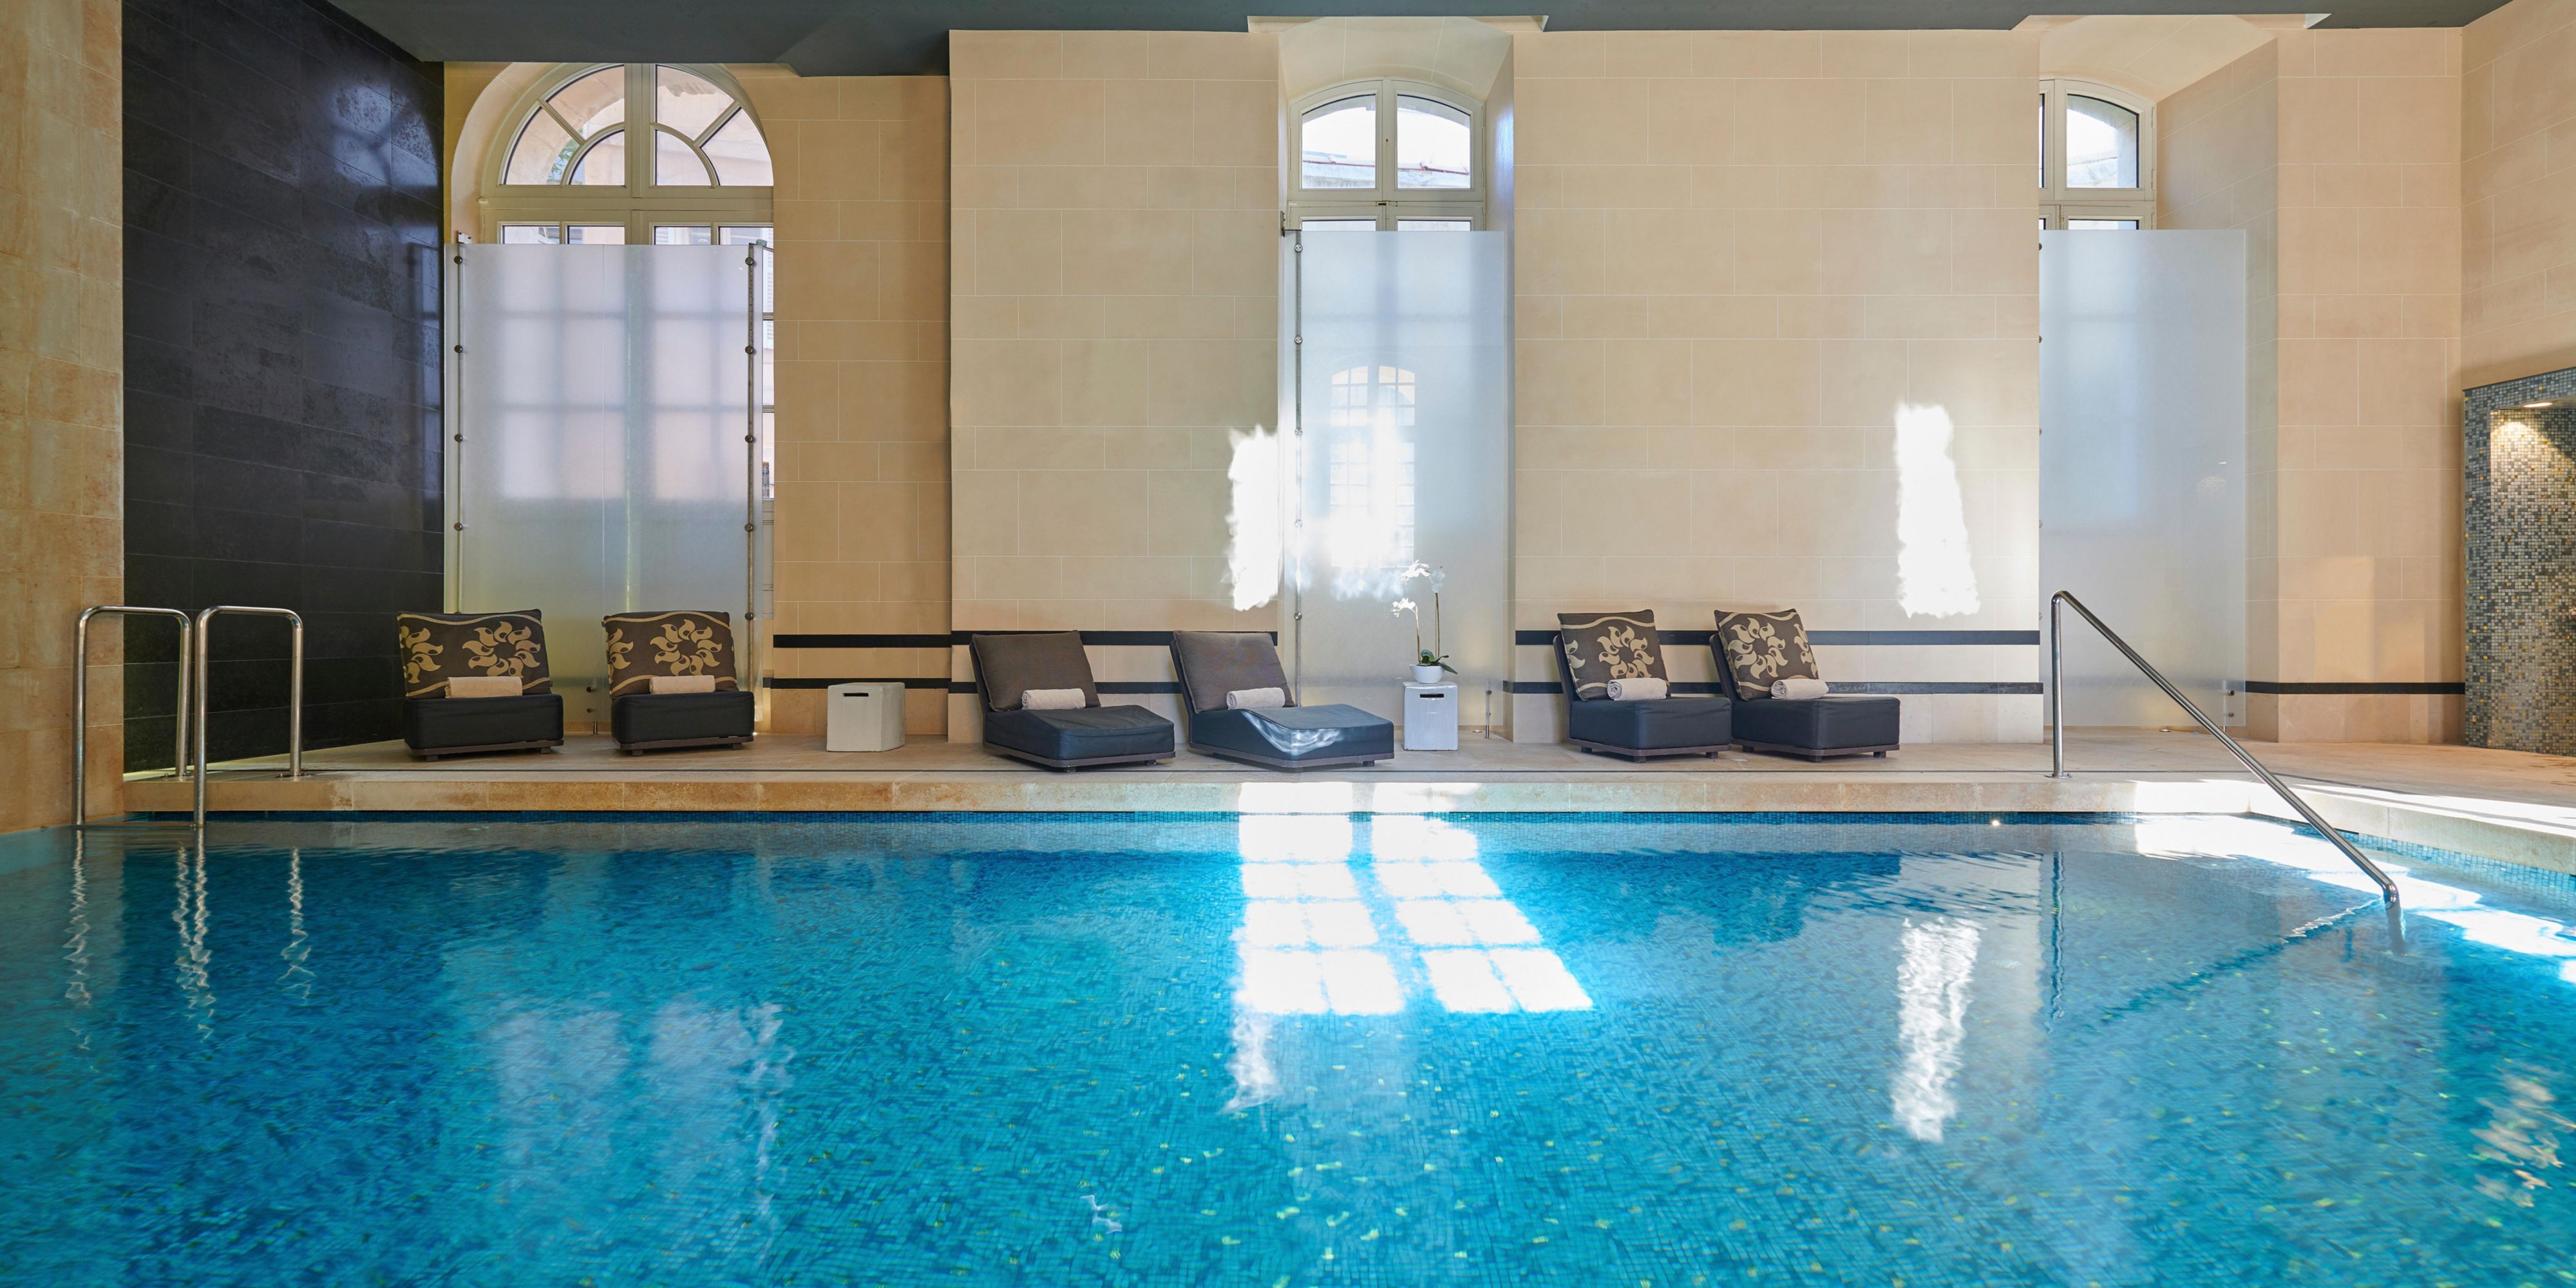 Dans un décor revisitant les traditionnels bassins et lavoirs provençaux, le SPA by Clarins offre une plongée relaxante et régénératrice dans le chaleureux et sensuel univers aquatique méditerranéen.